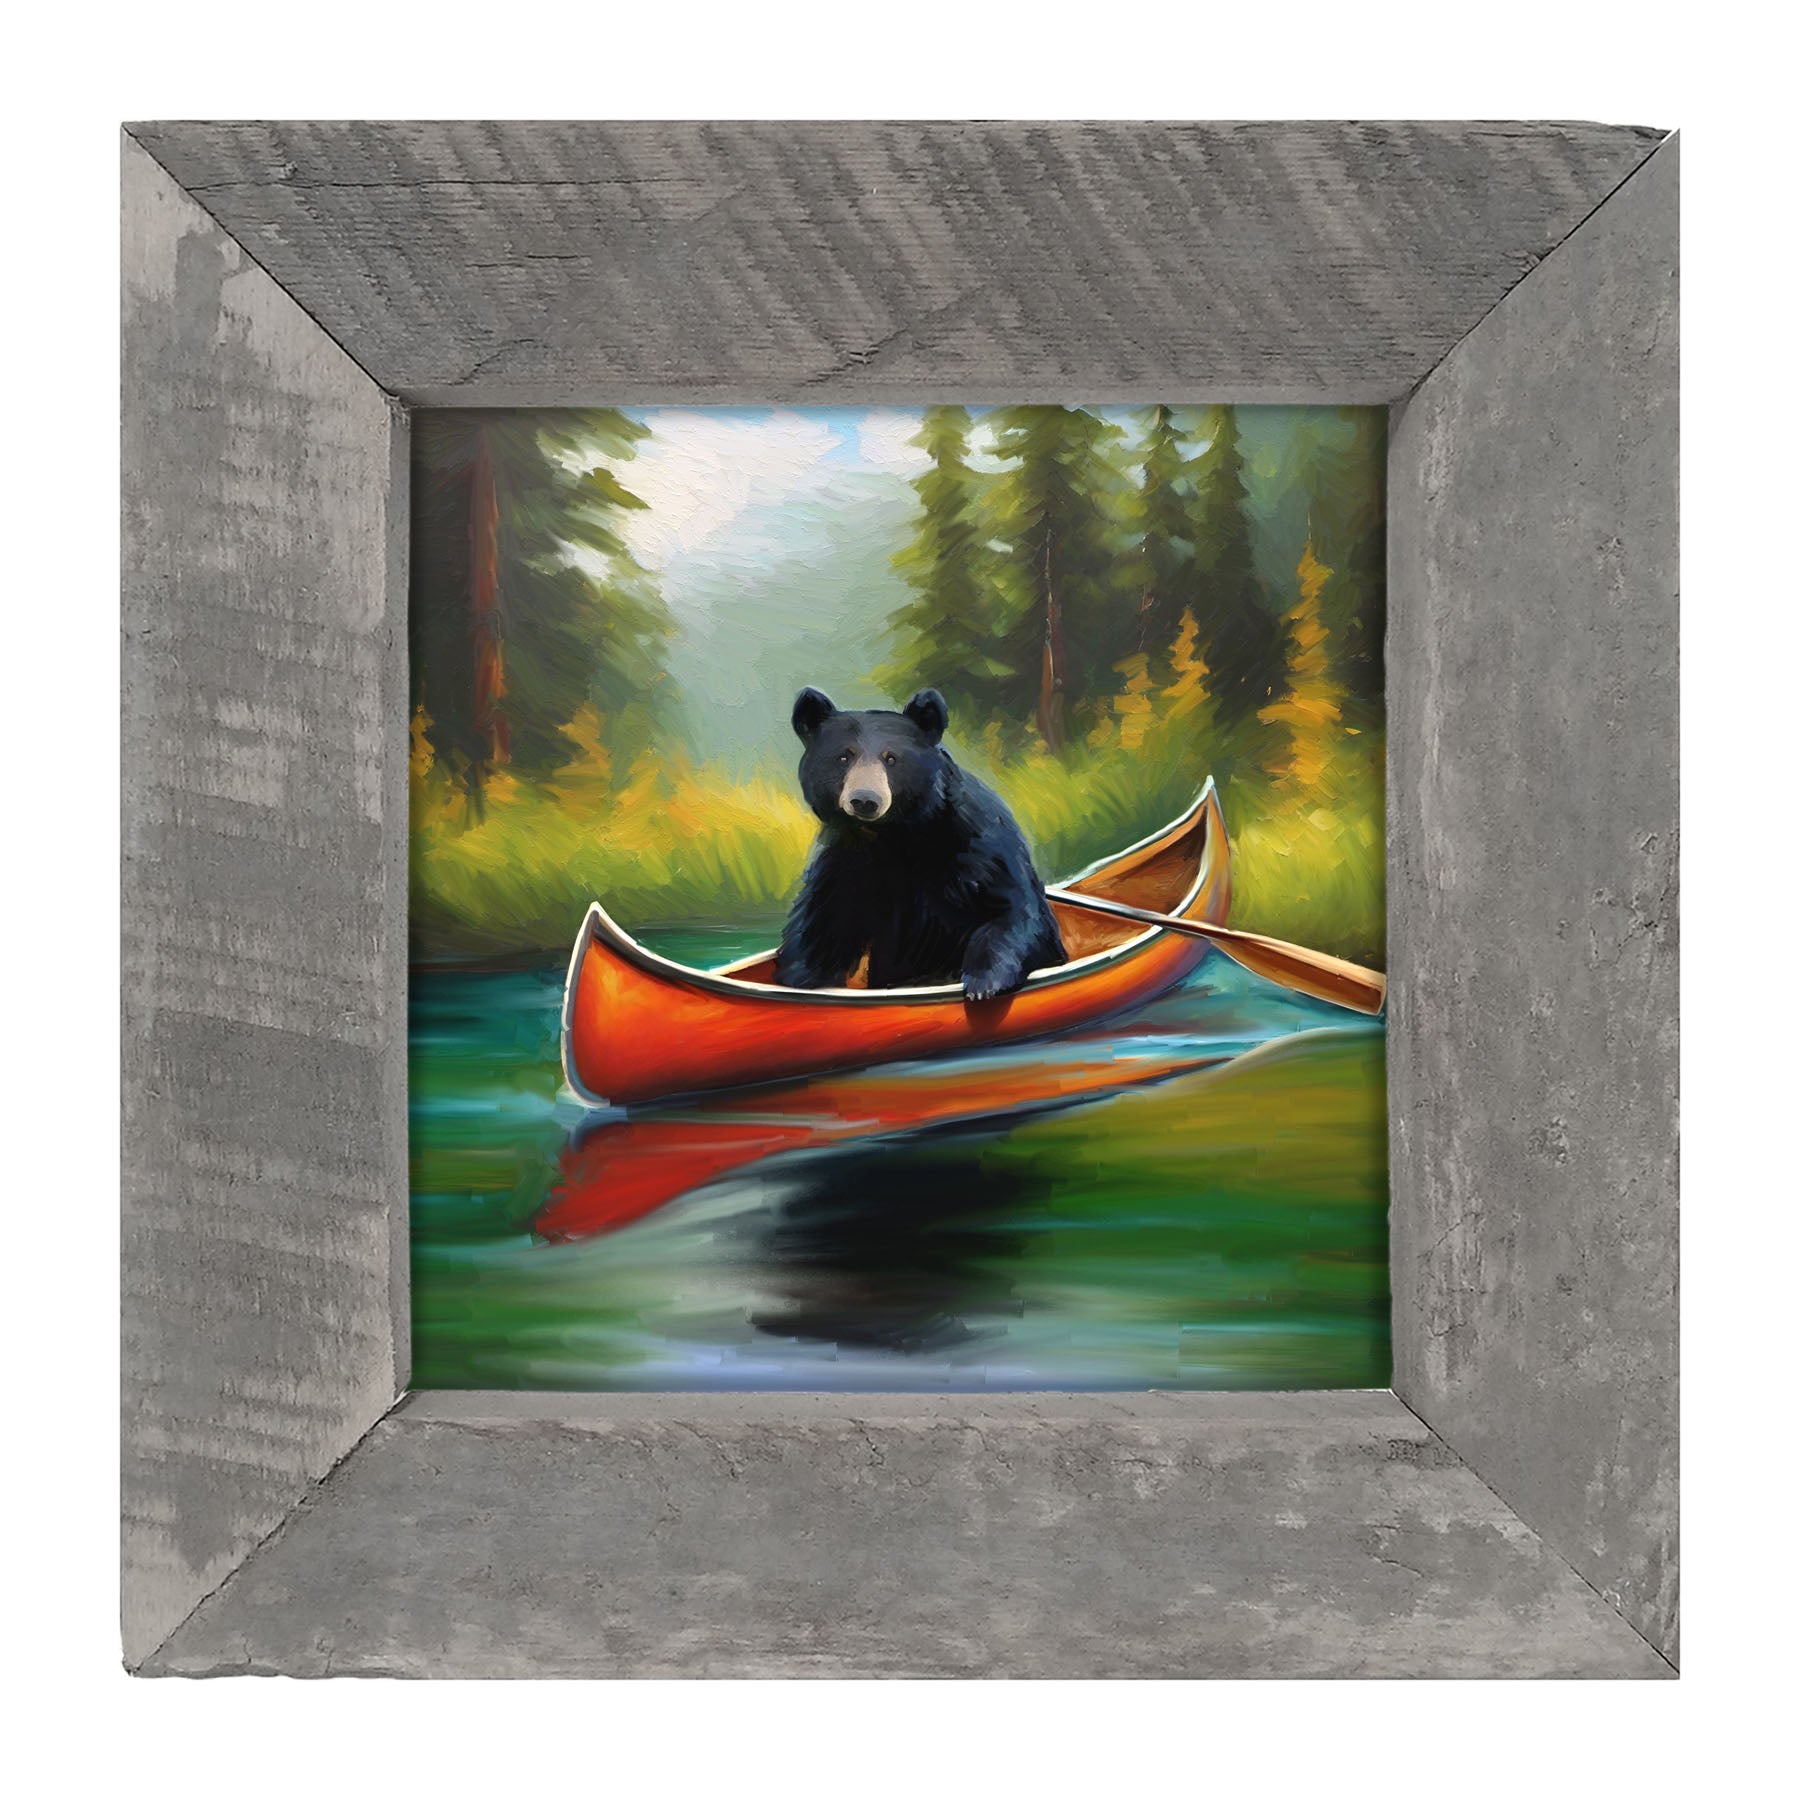 Black bear in Canoe - Framed art